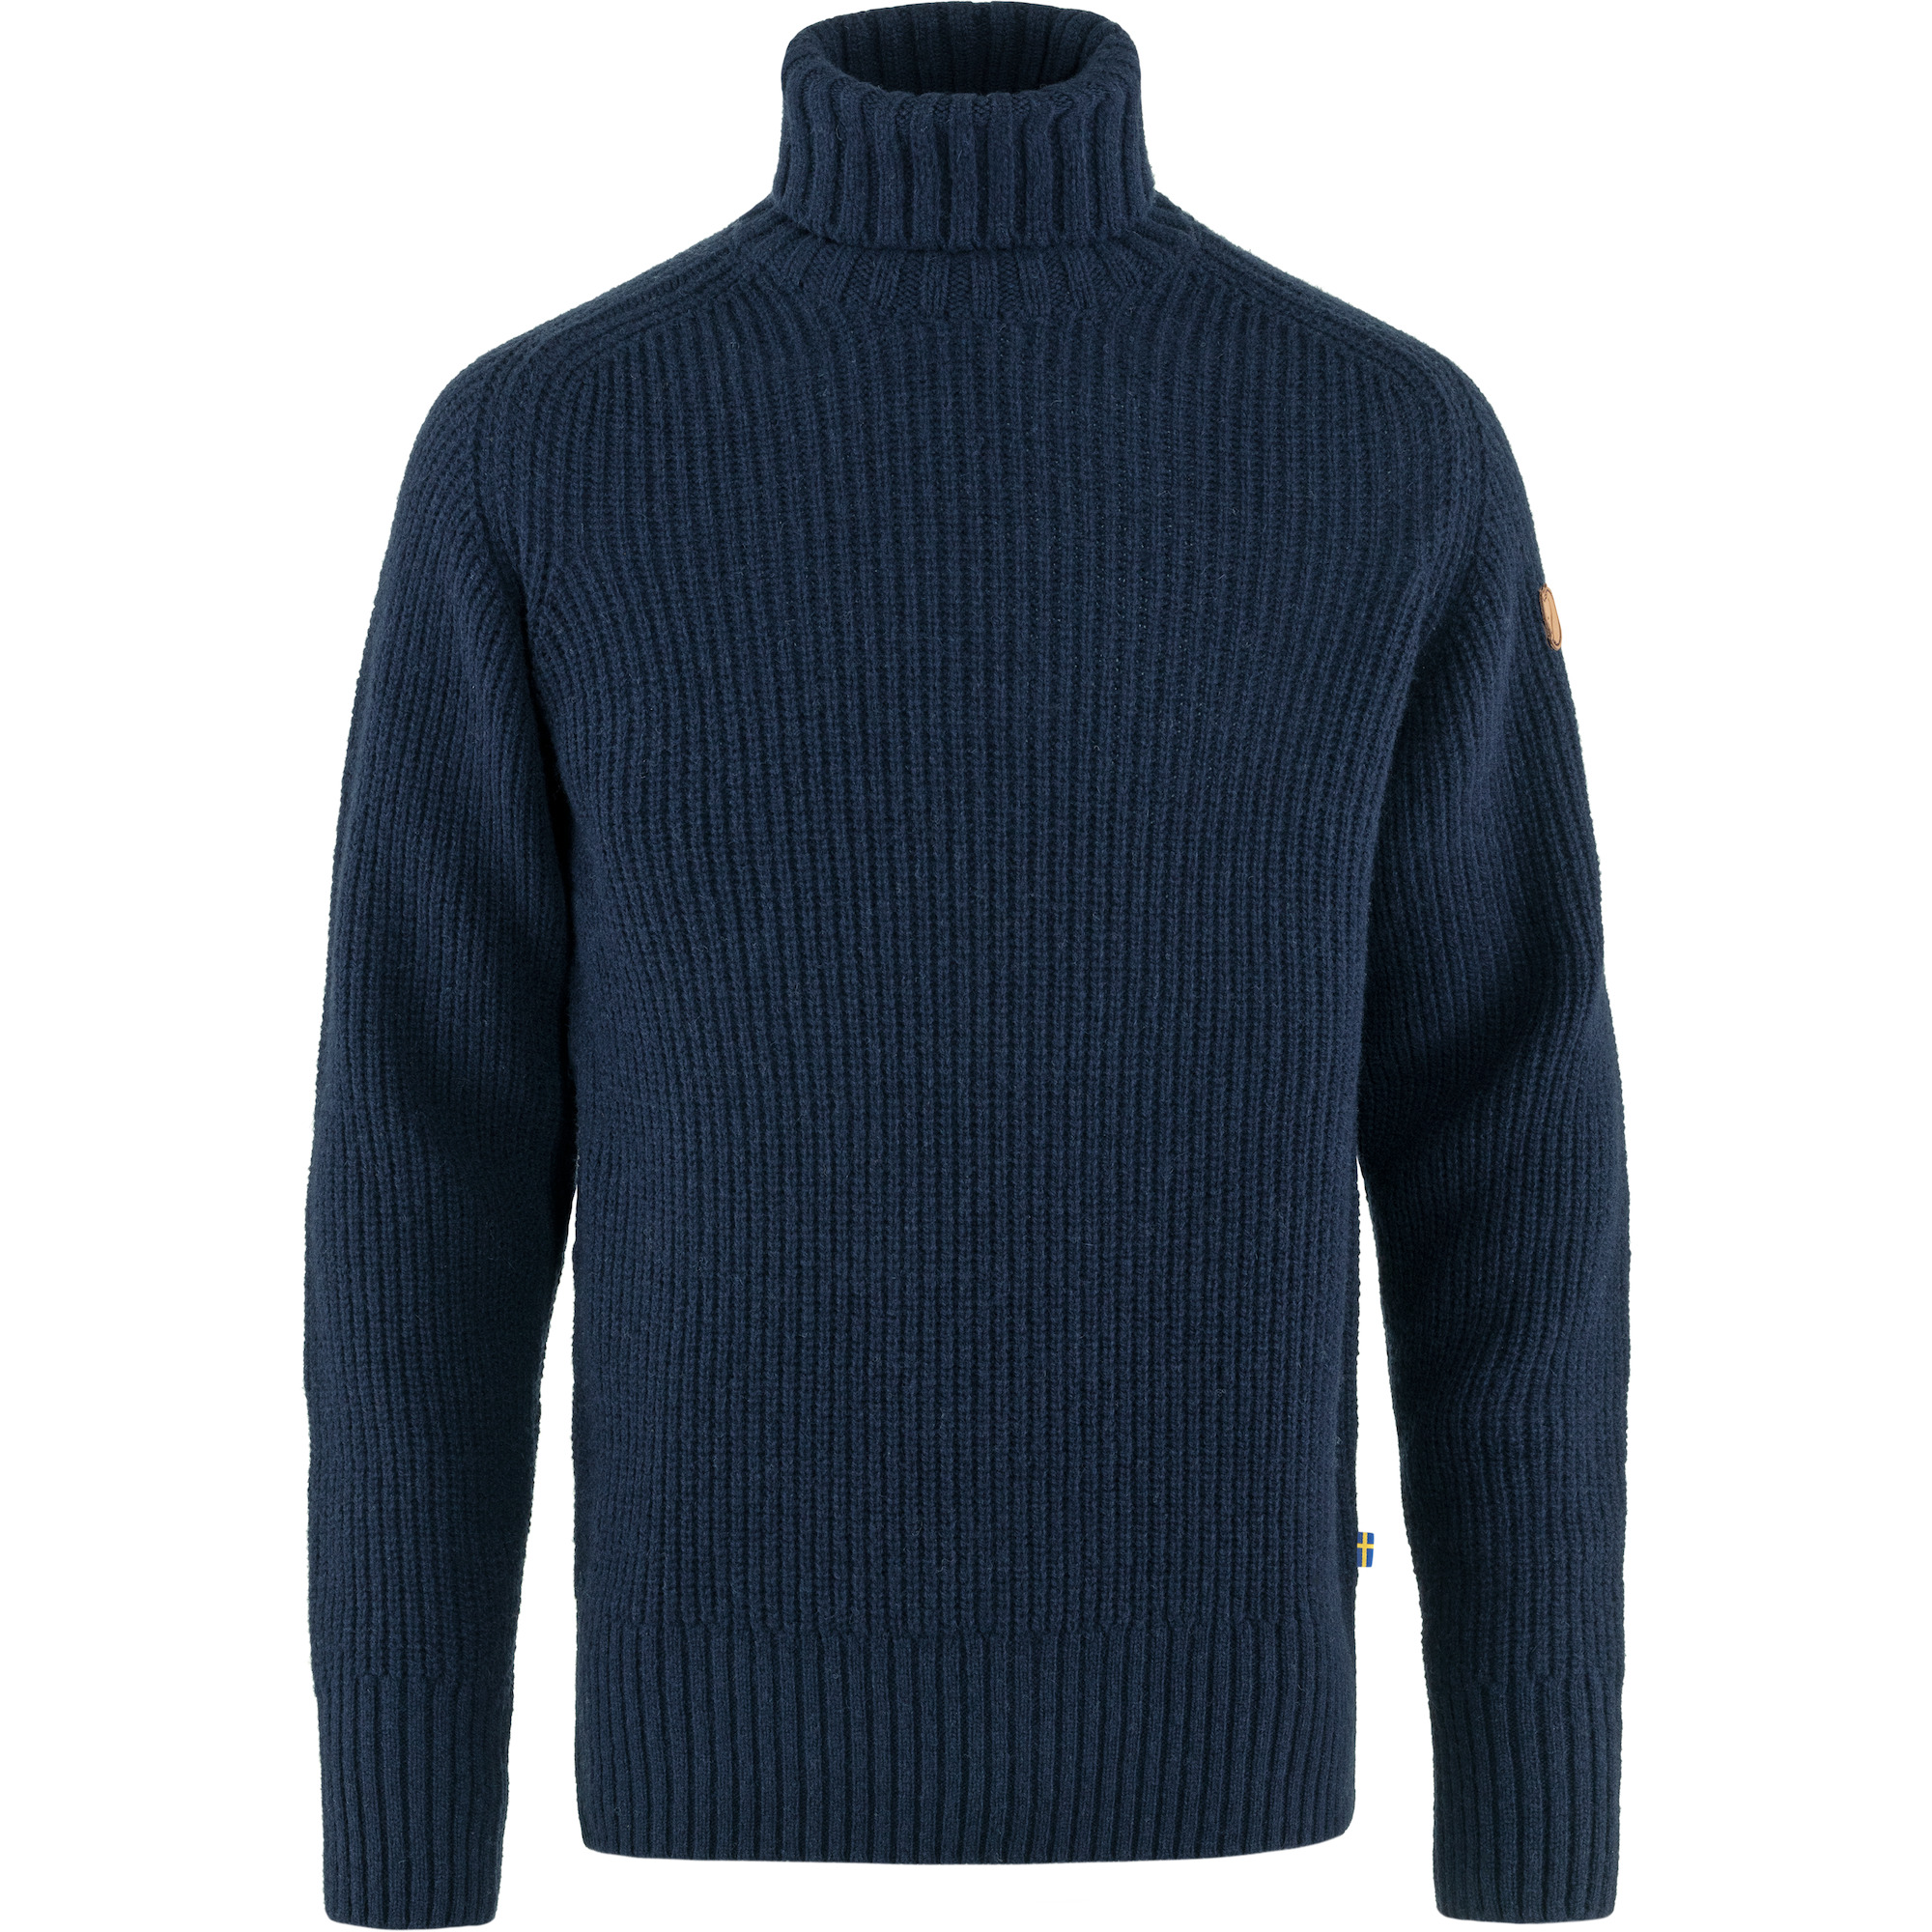 Shop Men's Sweaters & Knitwear